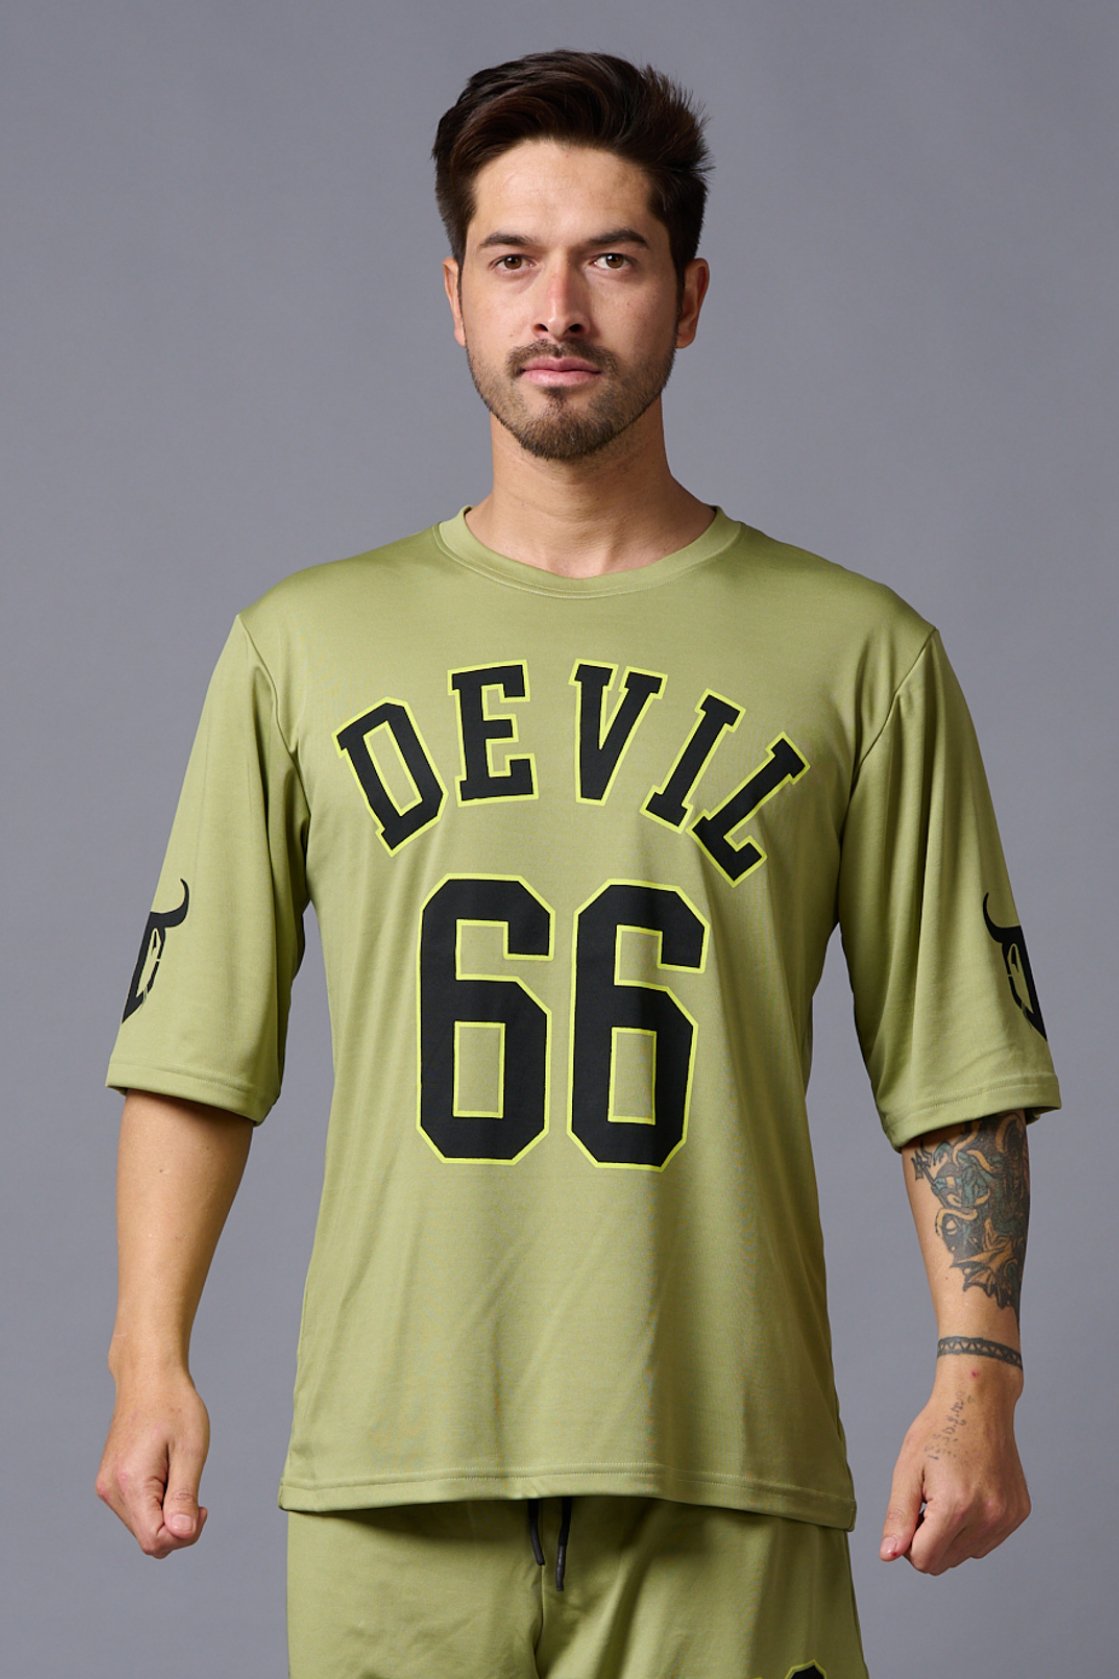 Devil 66 Printed Sage Green Polyester Jersy for Men - Go Devil